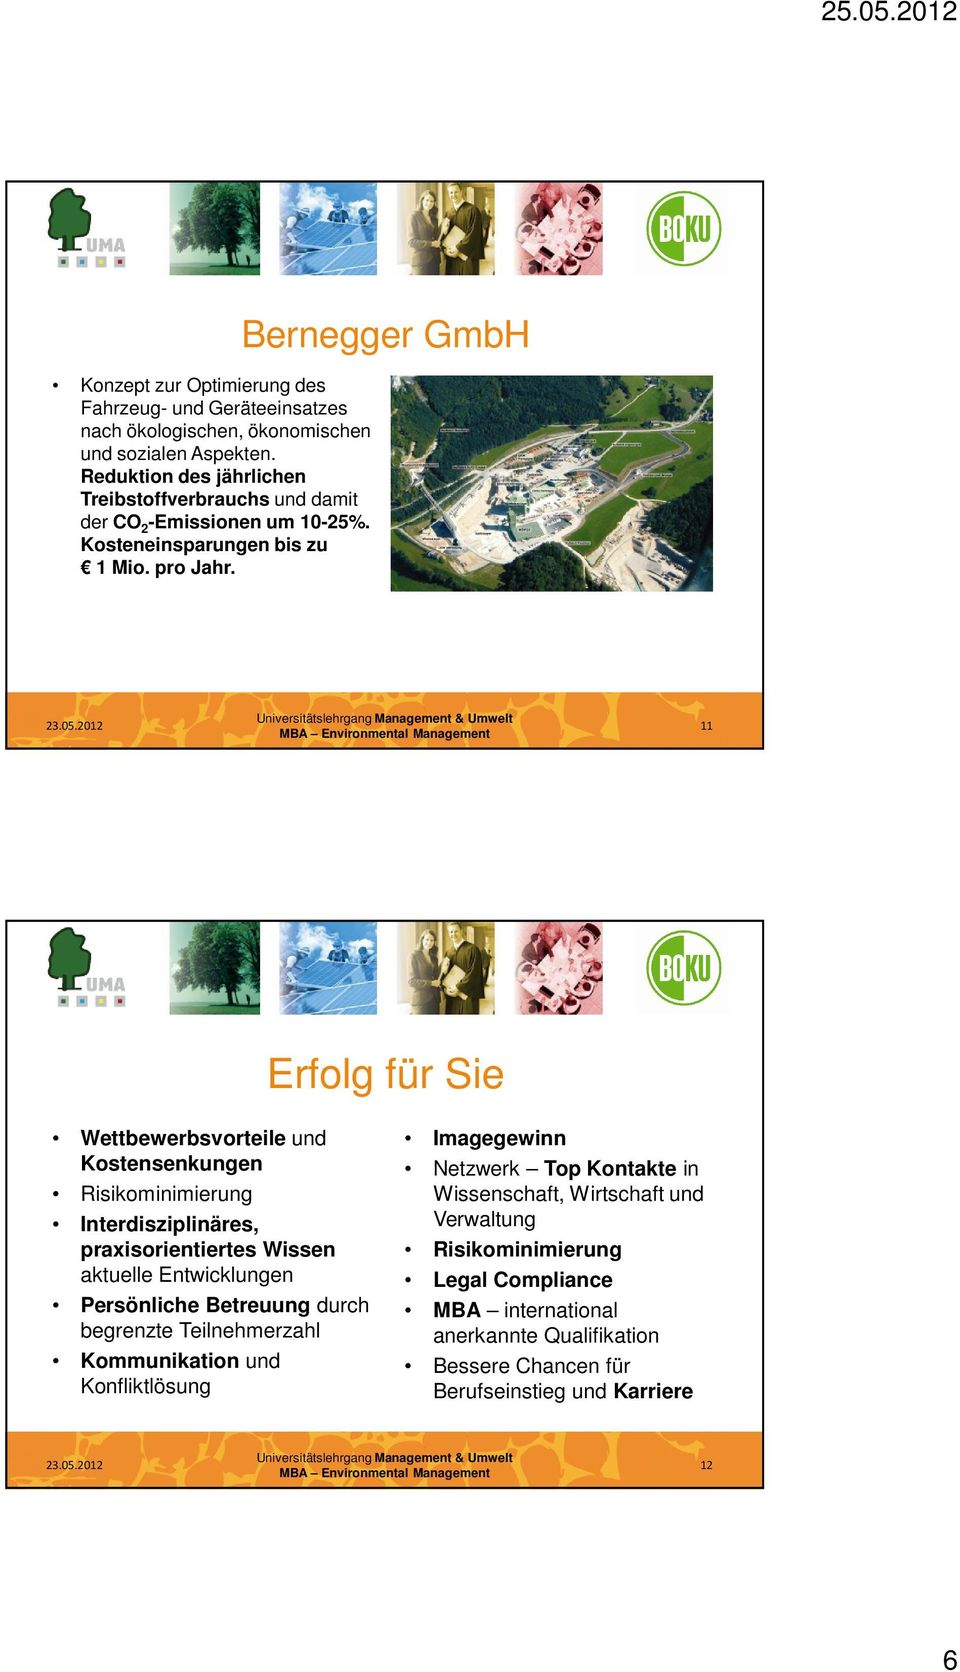 Bernegger GmbH 11 Erfolg für Sie Wettbewerbsvorteile und Kostensenkungen Risikominimierung Interdisziplinäres, praxisorientiertes Wissen aktuelle Entwicklungen Persönliche